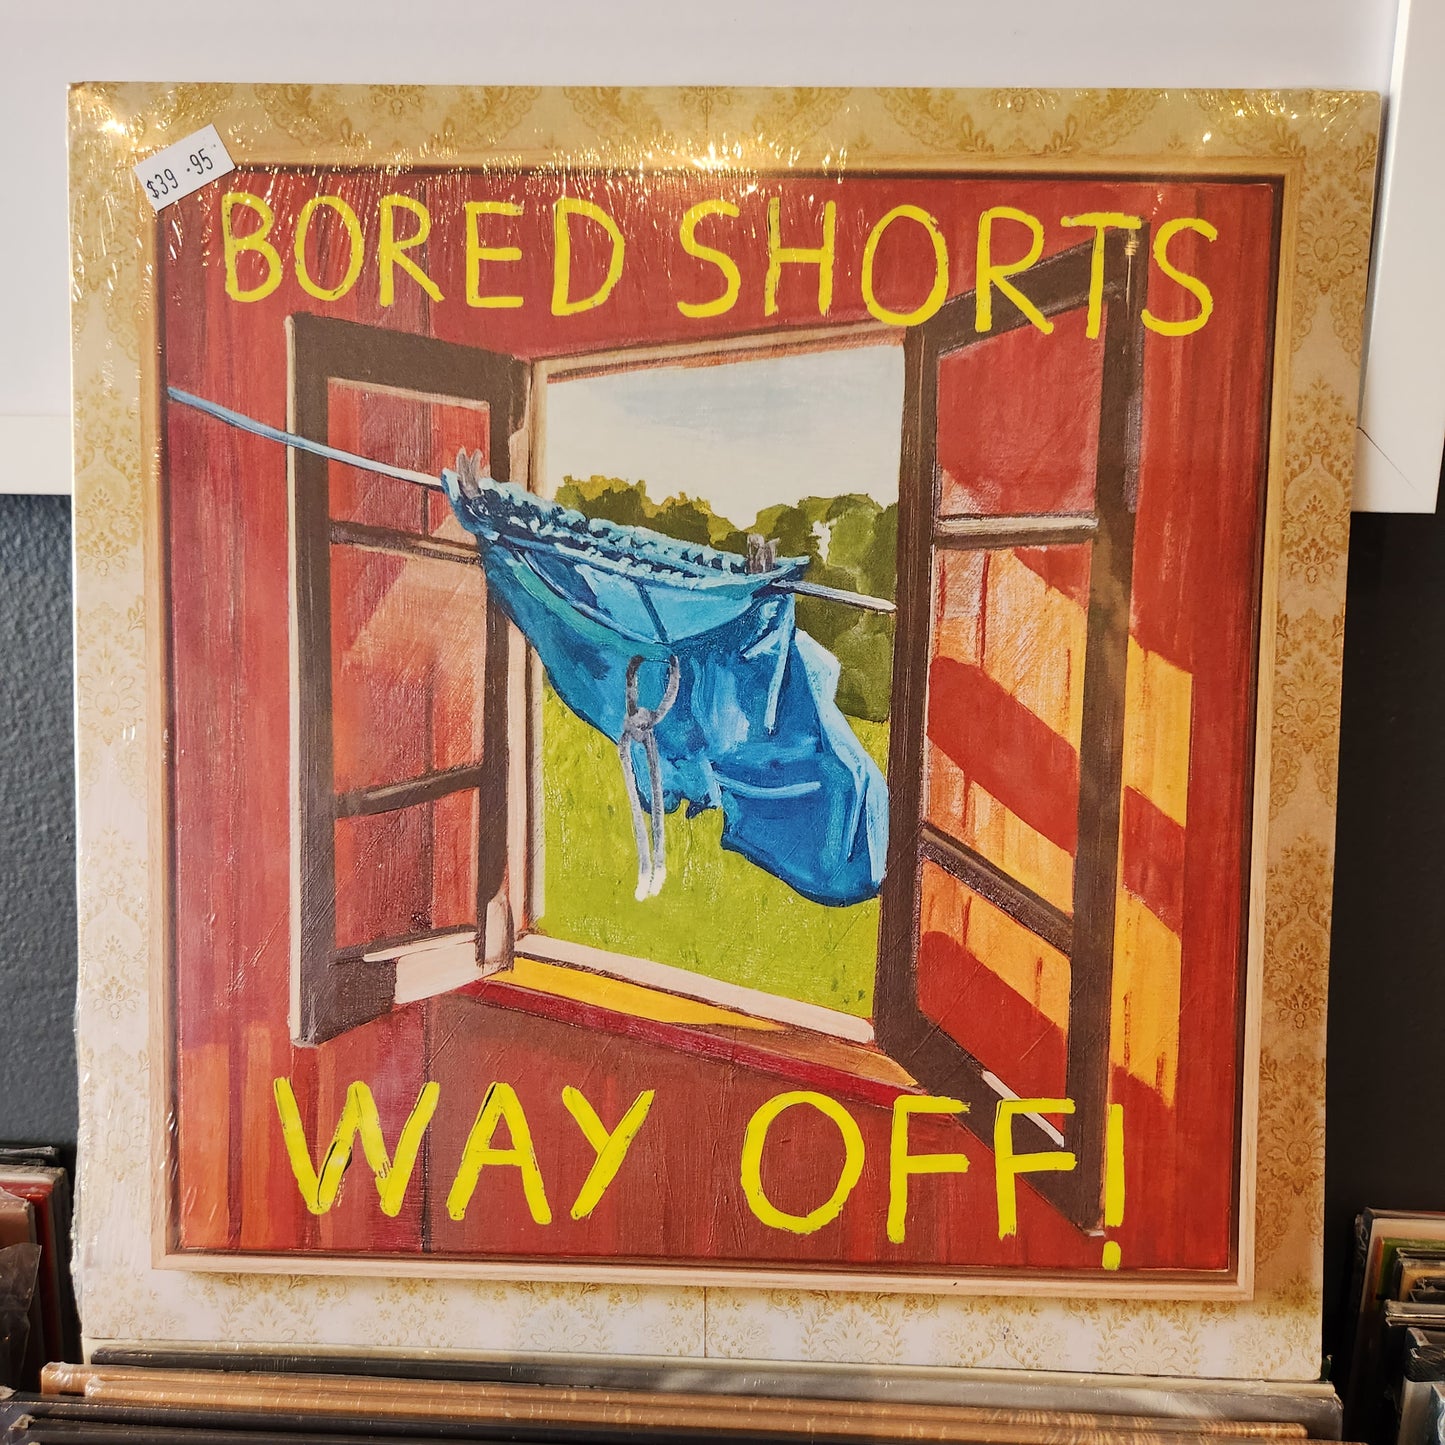 Bored Shorts - Way off - Vinyl LP